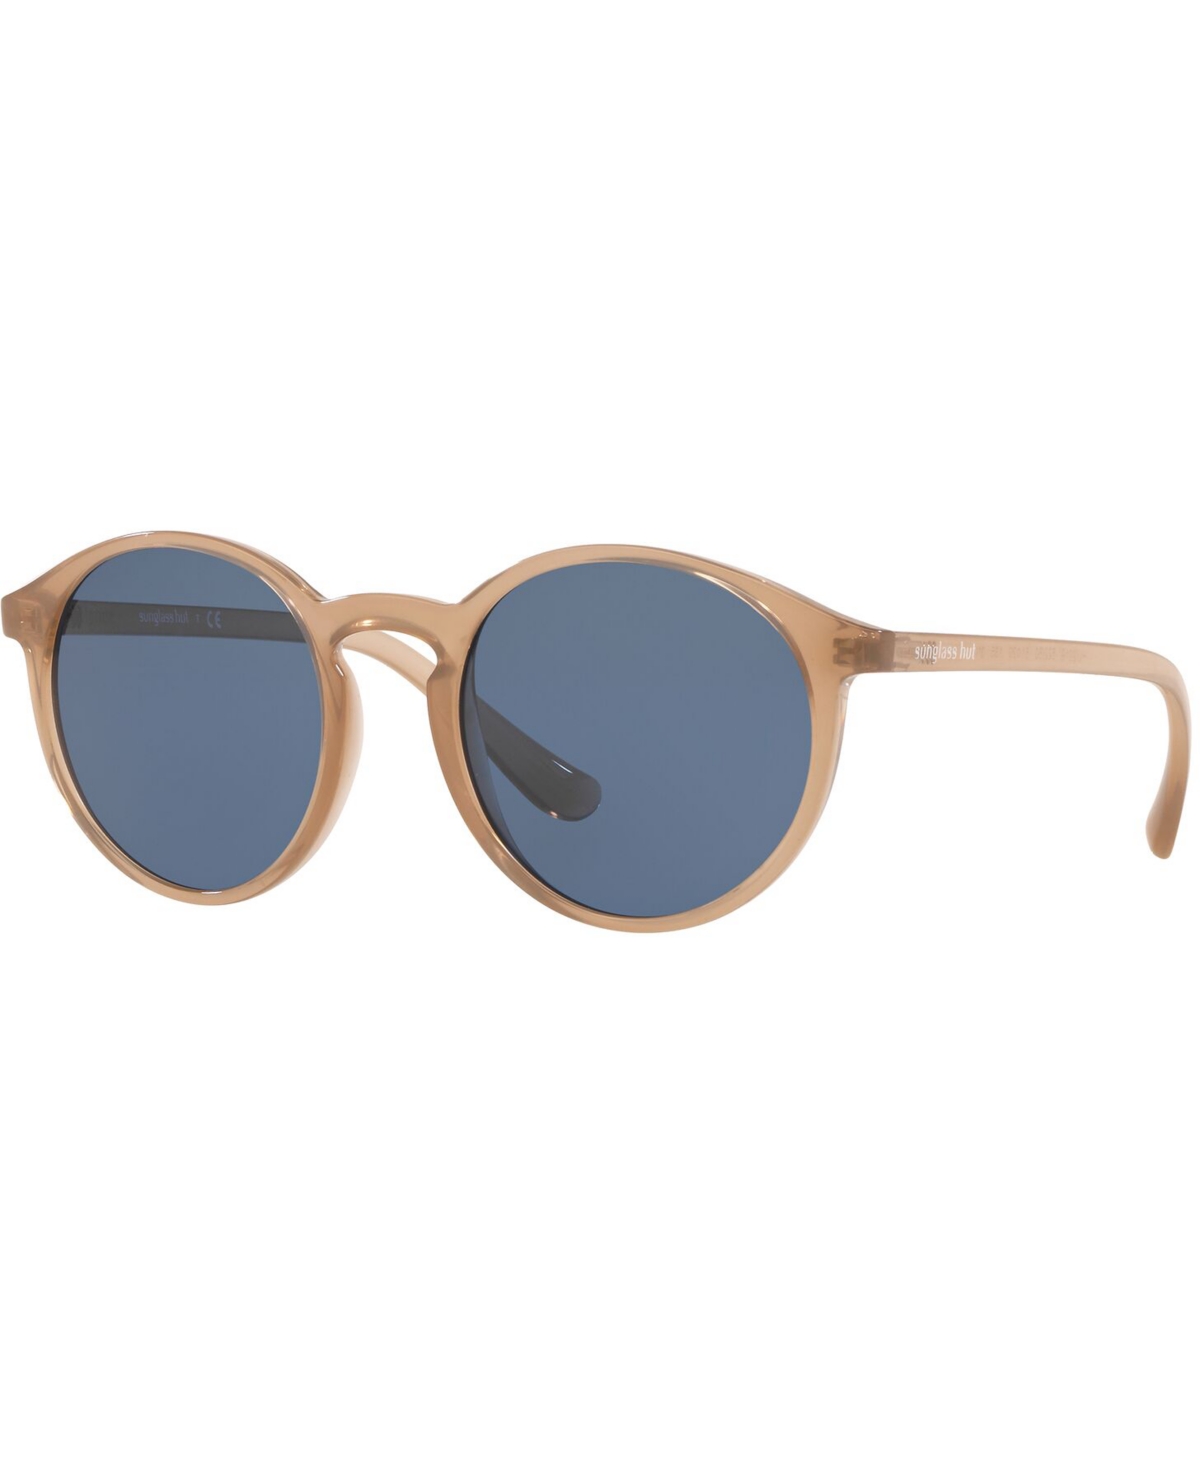 Sunglasses, 0HU2019 - OPAL SAND/BLUE